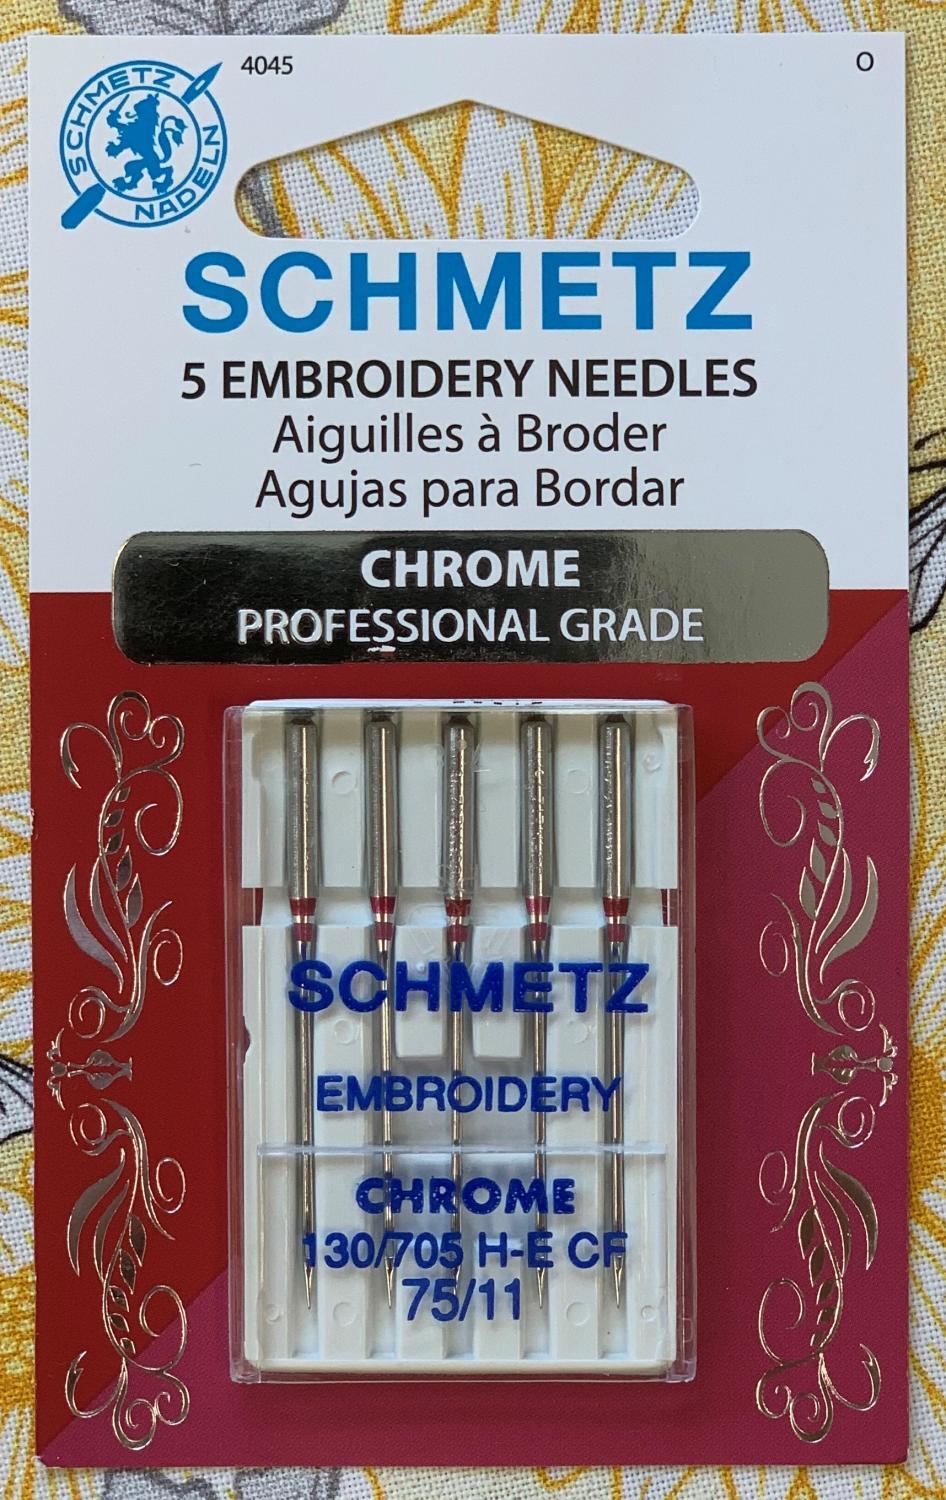 Schmetz Chrome Embroidery Needles 75/11